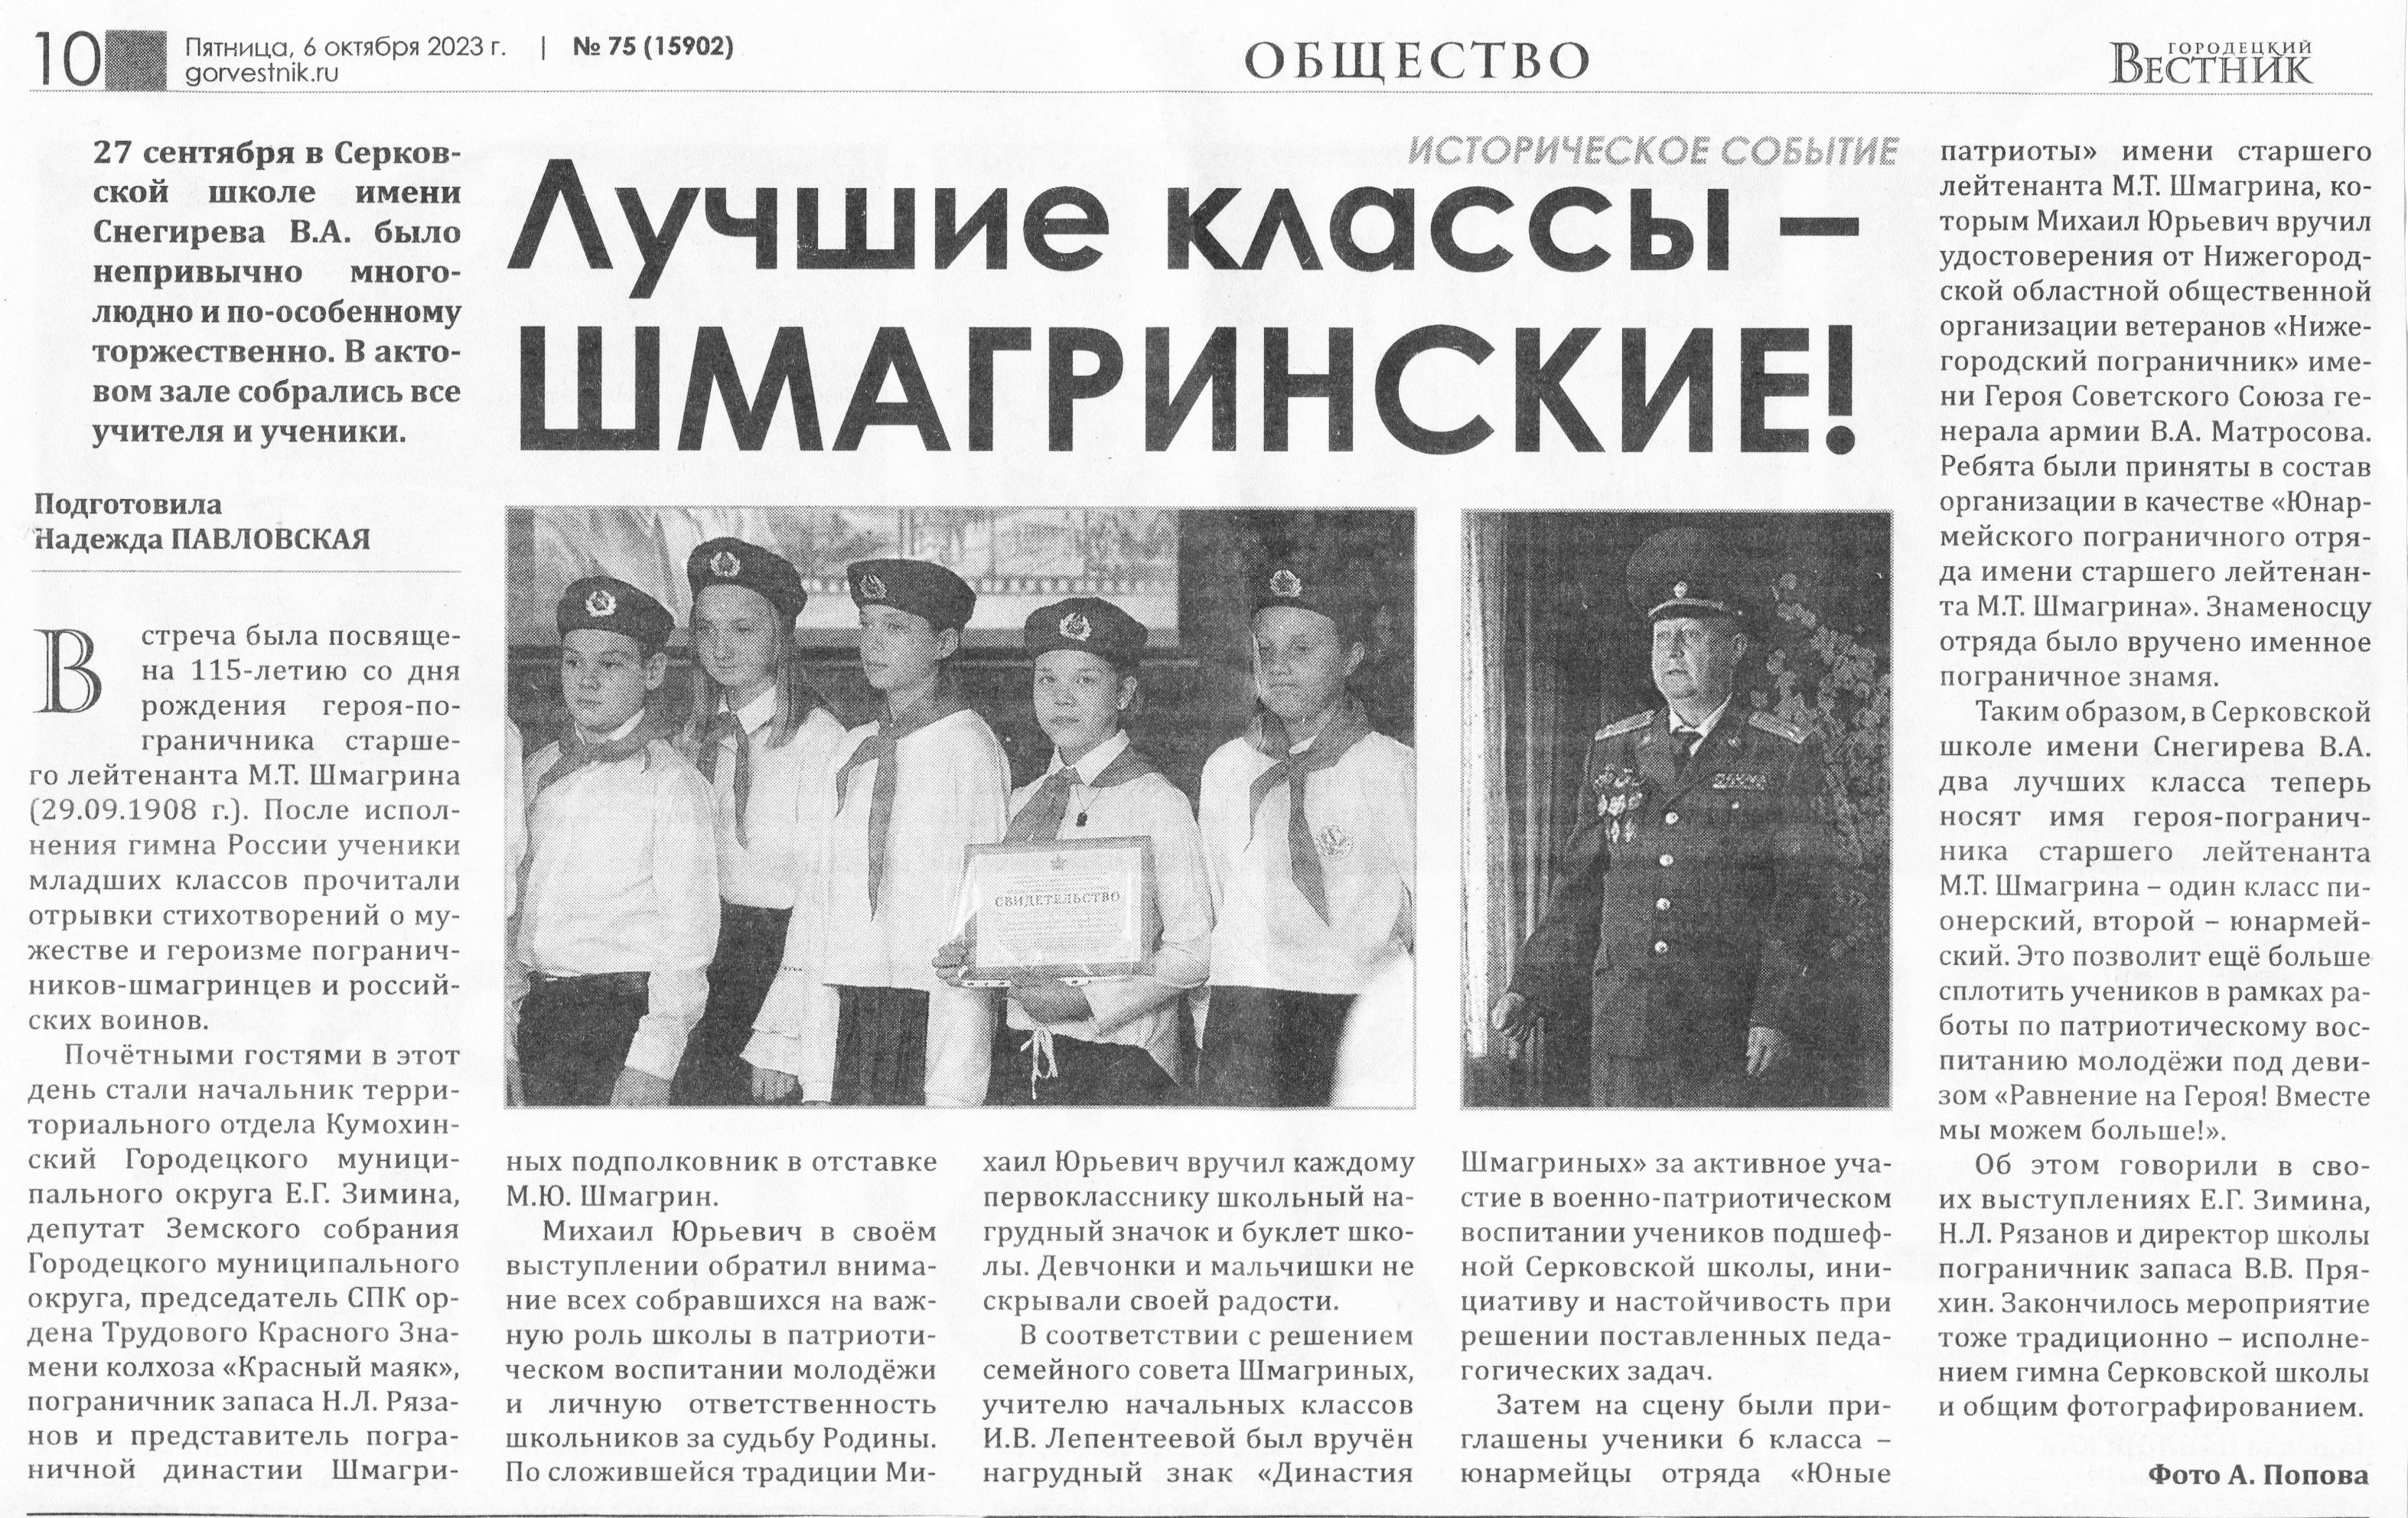 Статья в Городецком вестнике